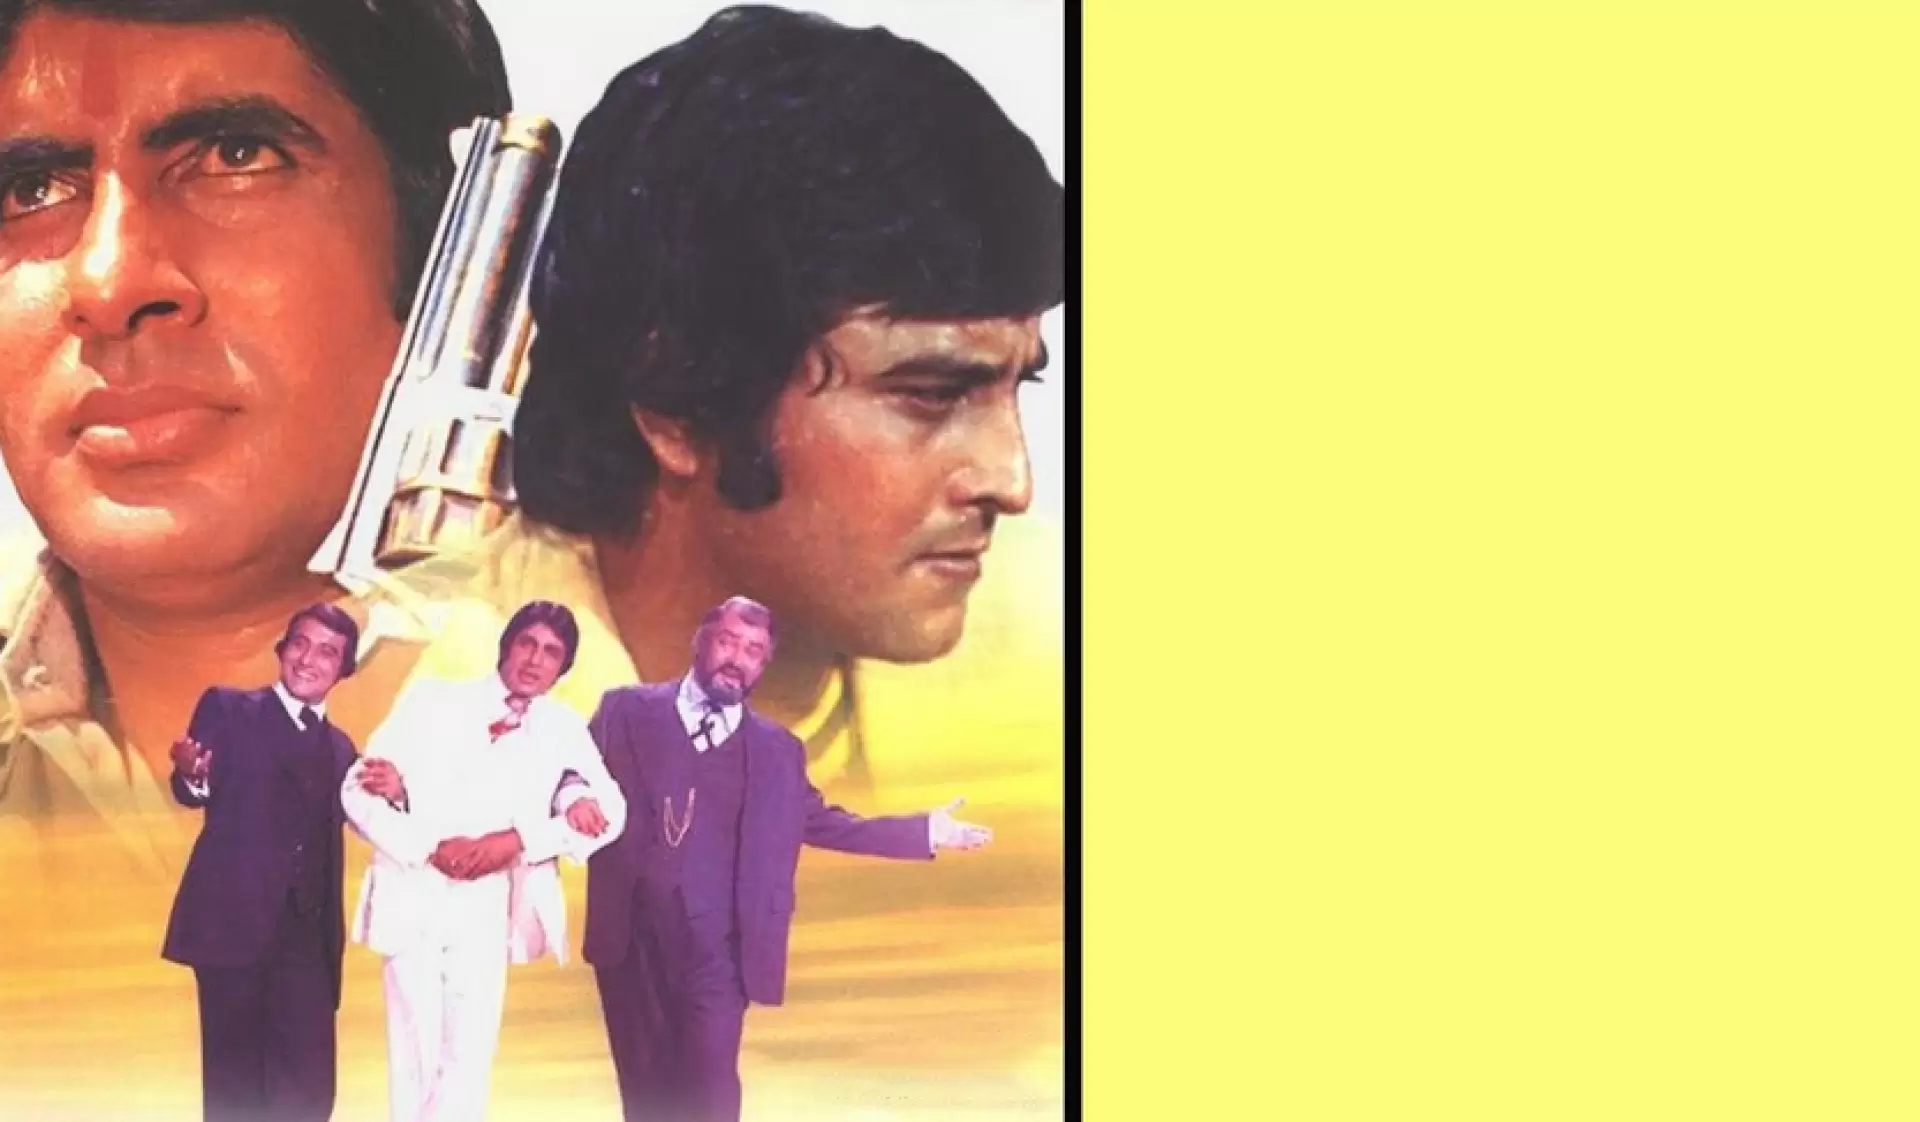 دانلود فیلم Parvarish 1977